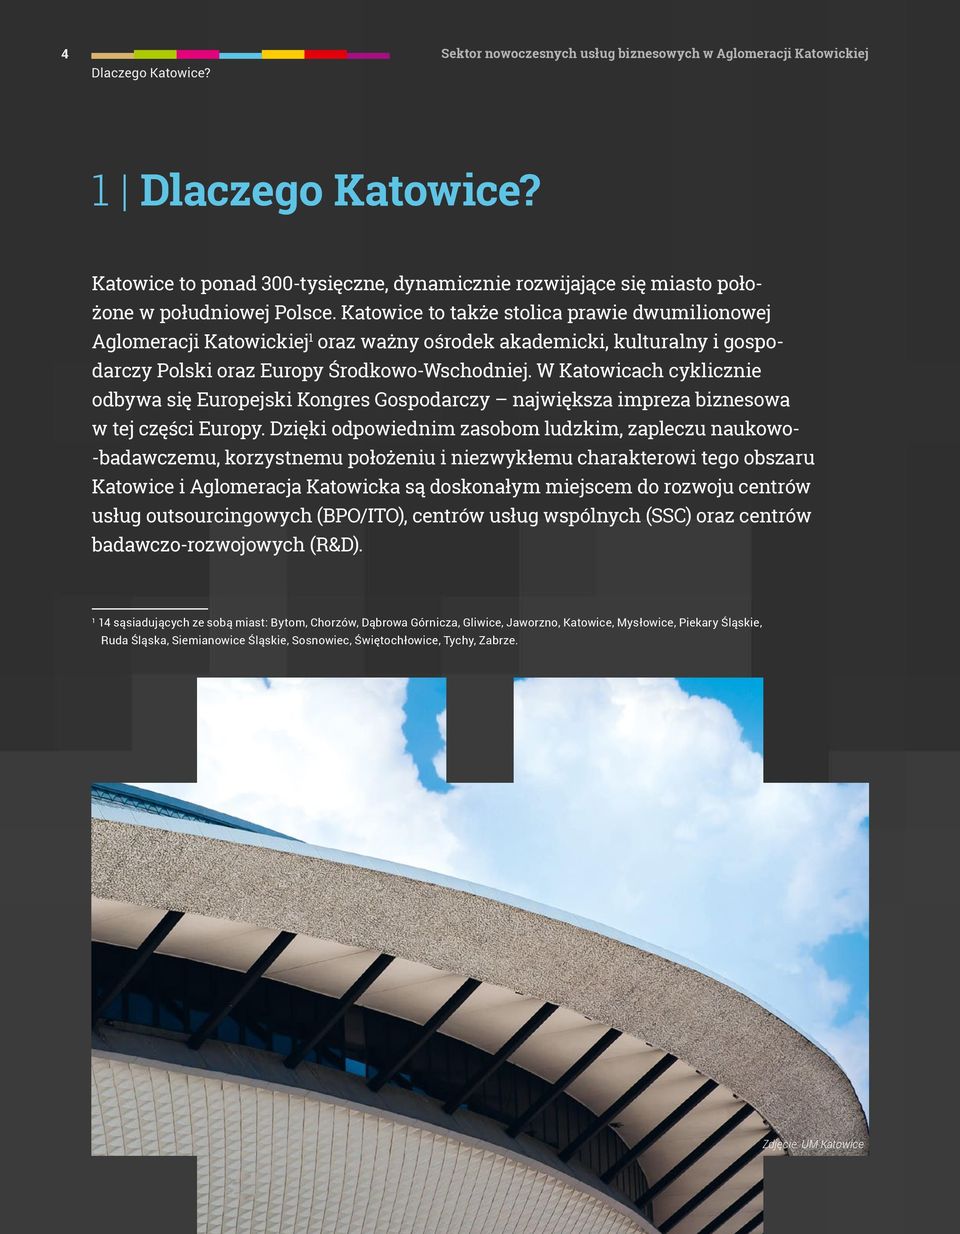 Katowice to także stolica prawie dwumilionowej Aglomeracji Katowickiej 1 oraz ważny ośrodek akademicki, kulturalny i gospodarczy Polski oraz Europy Środkowo-Wschodniej.